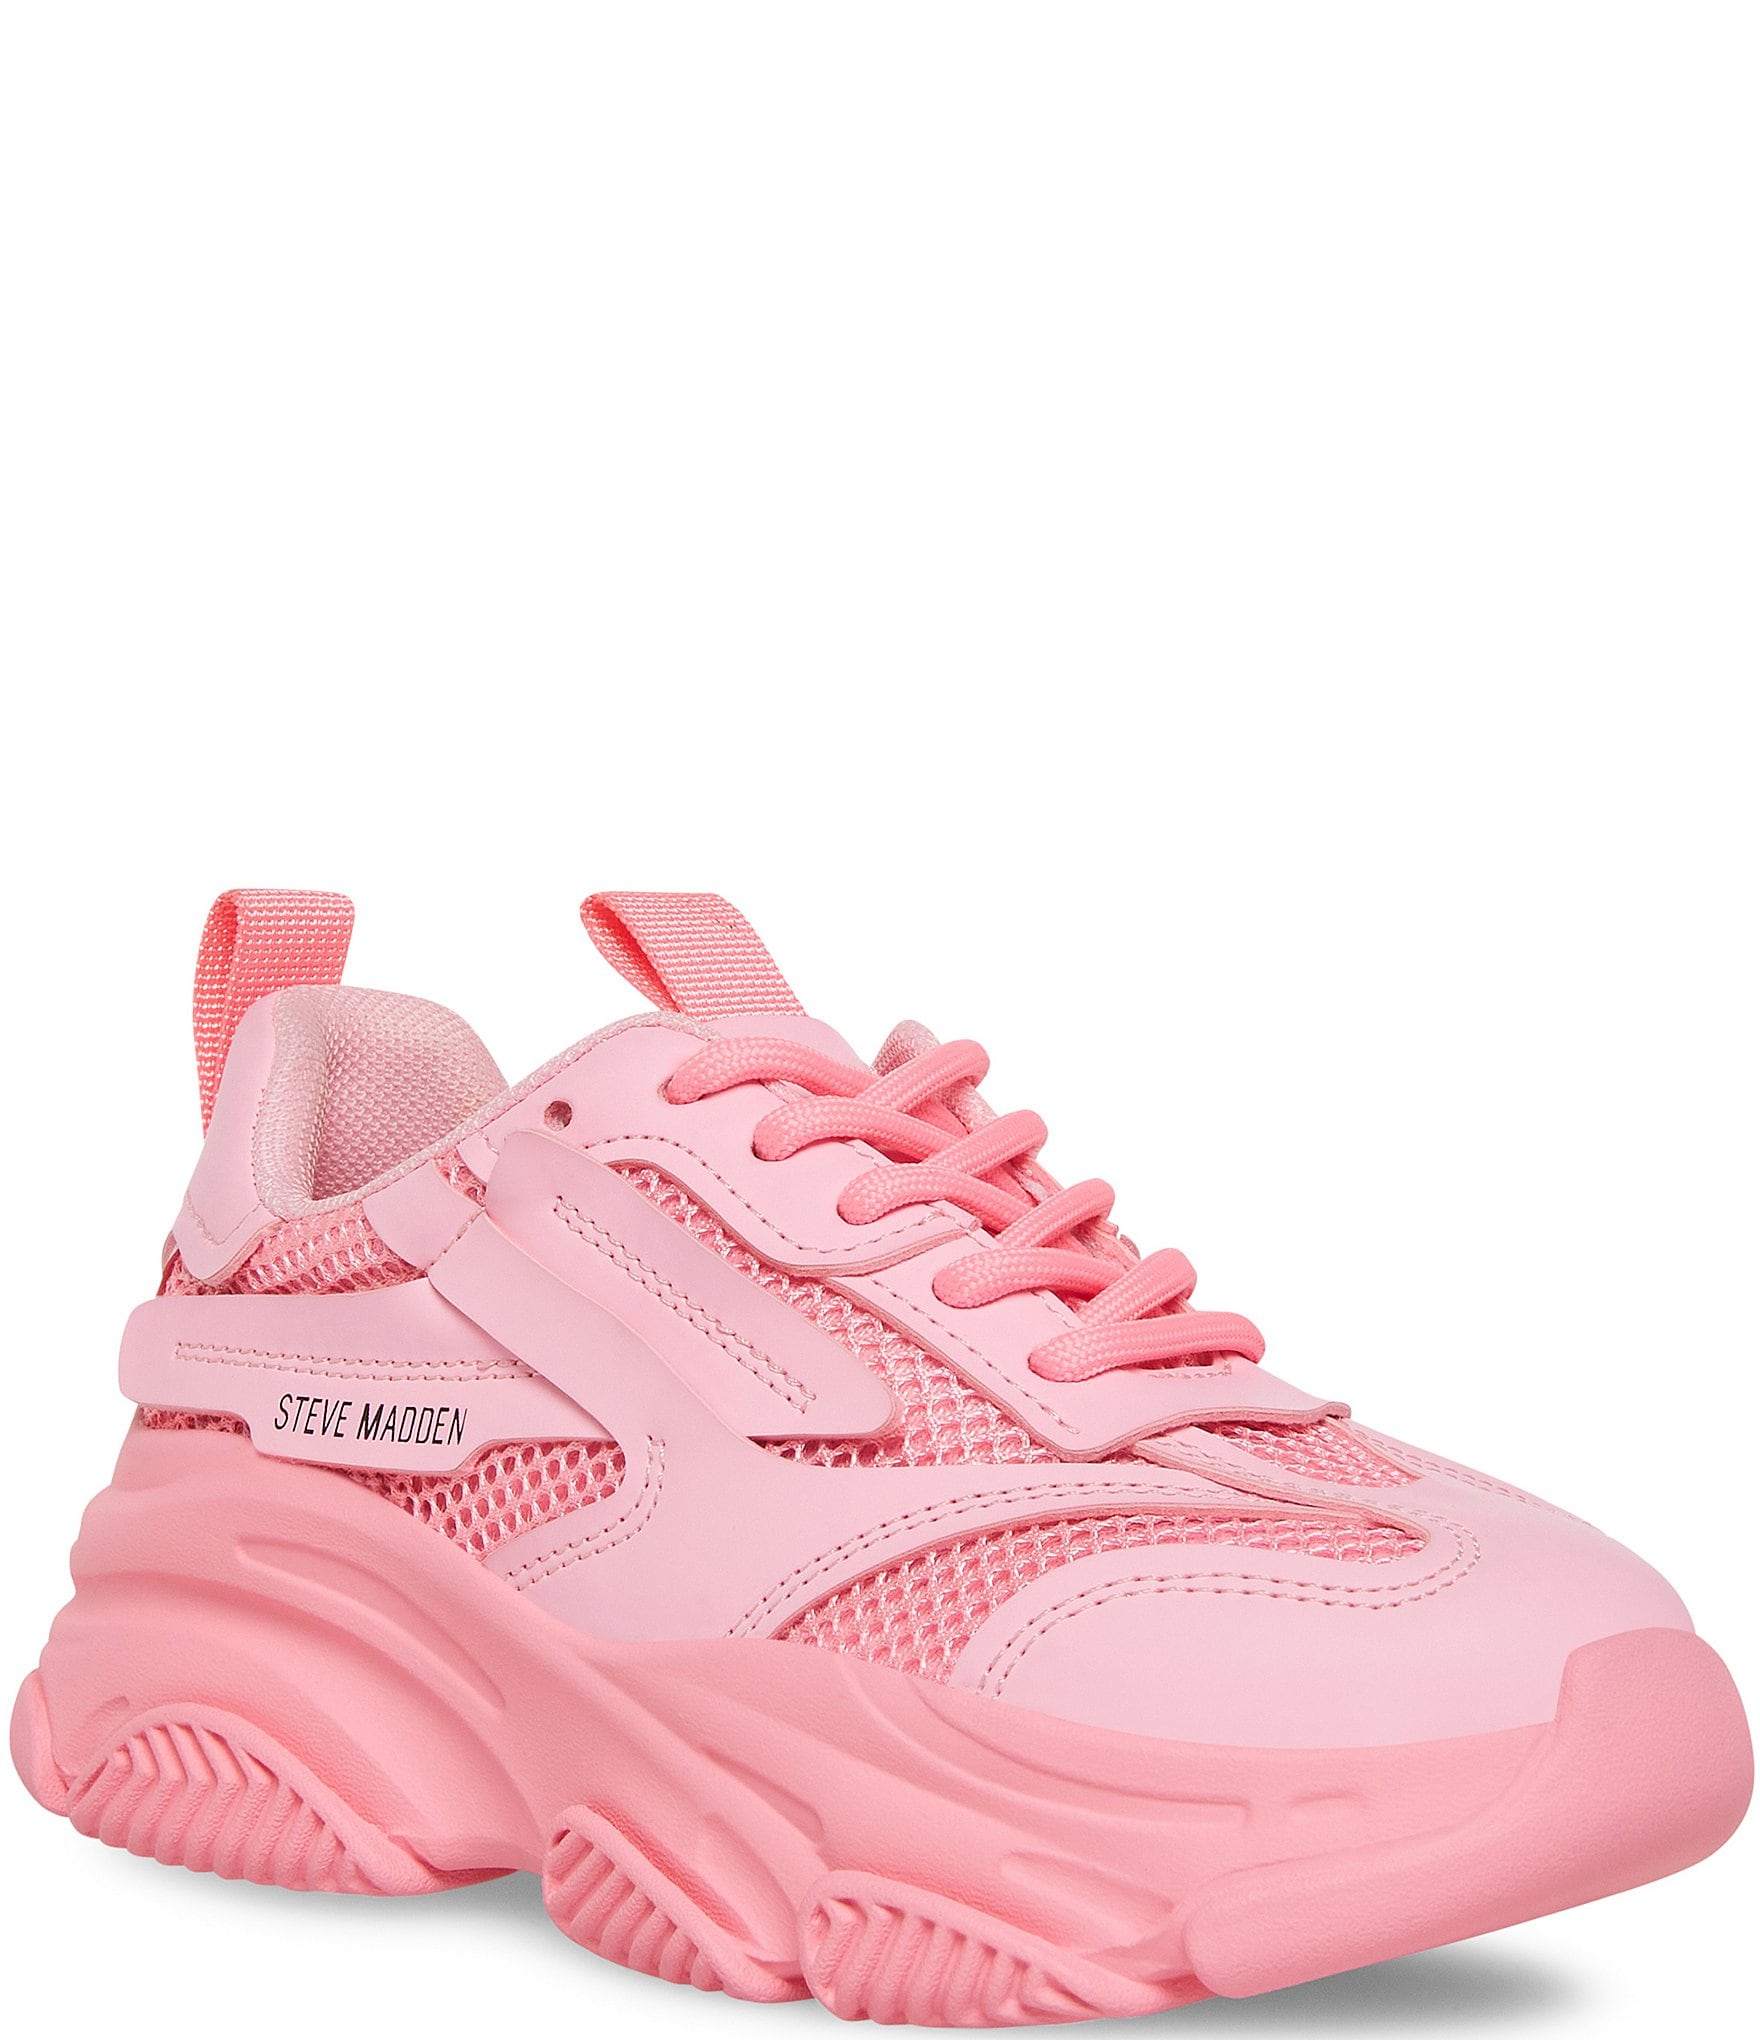 sælge Konflikt Gurgle Steve Madden Girls' J-Possession Lace-Up Sneakers (Youth) | Dillard's